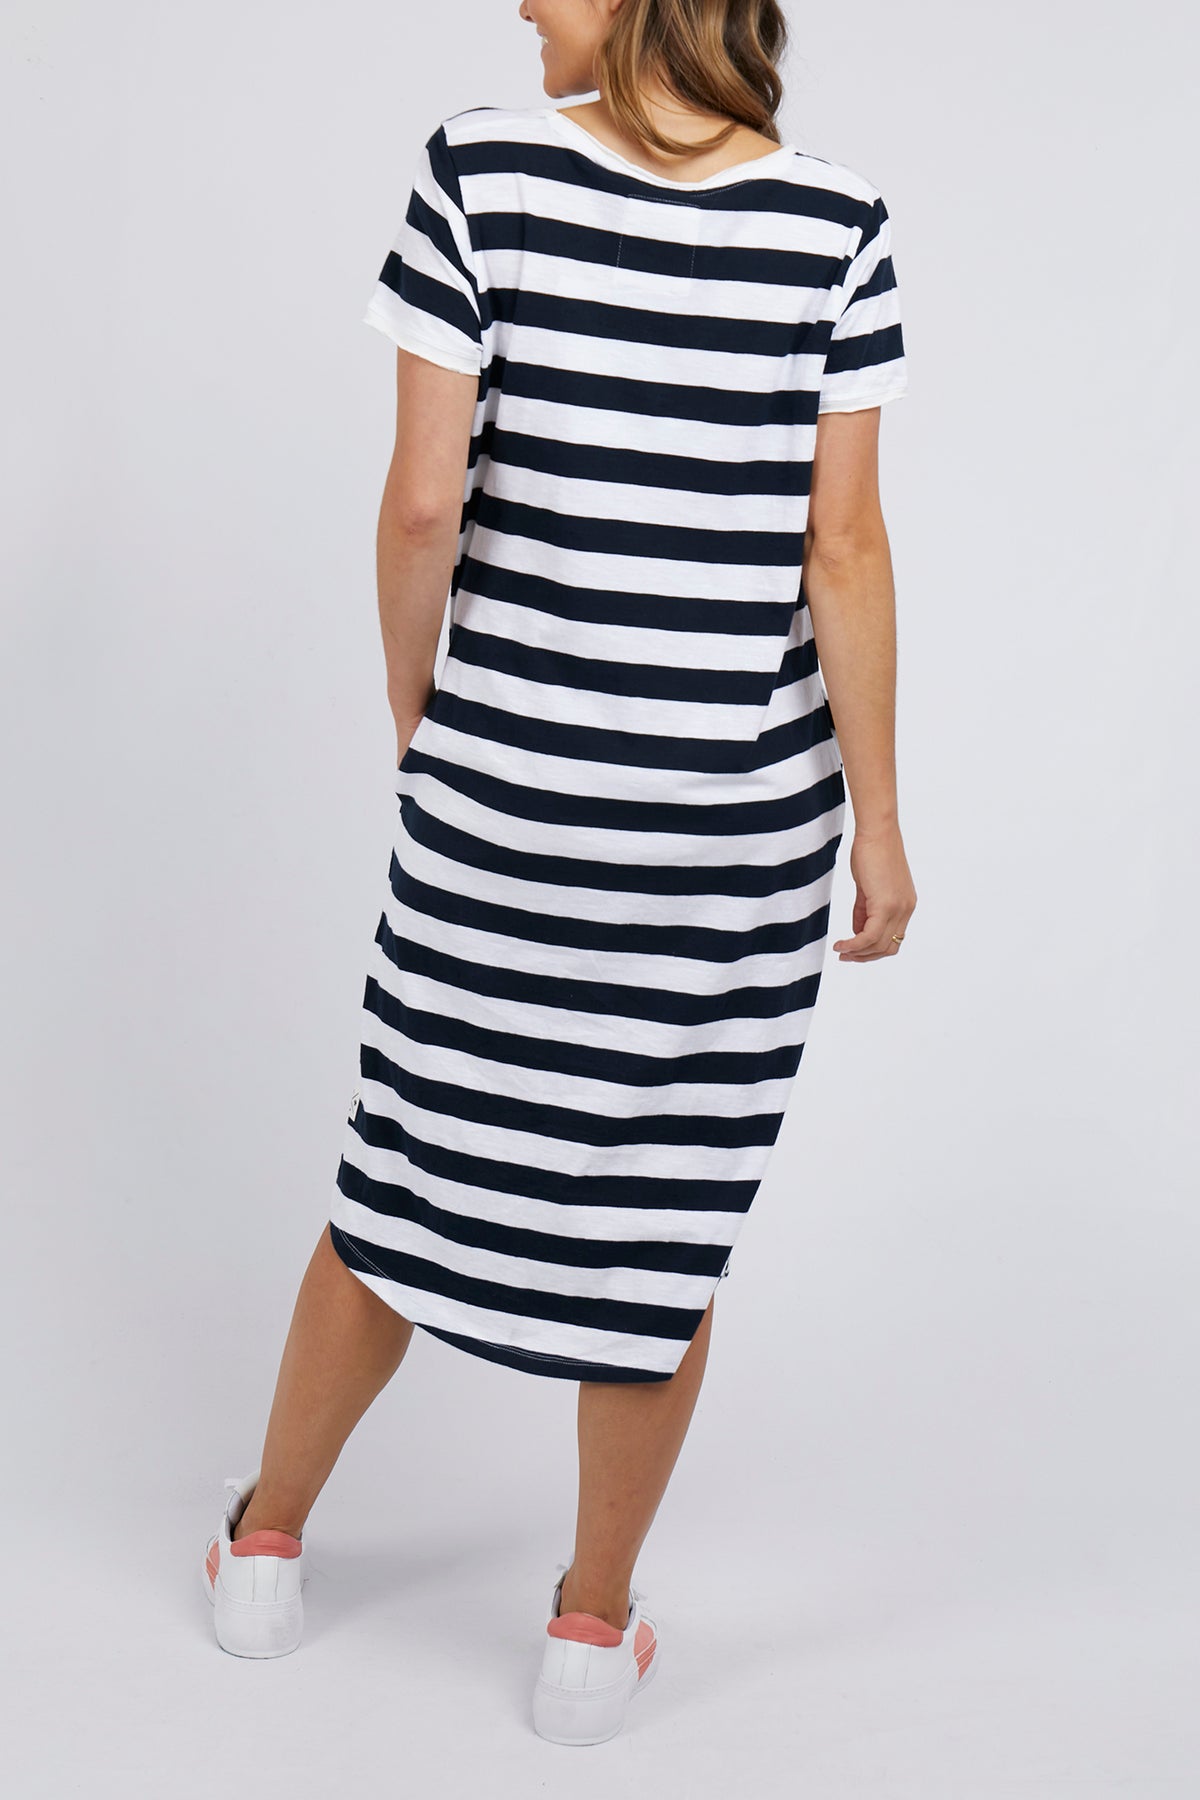 Maeve Dress Navy & White Stripe